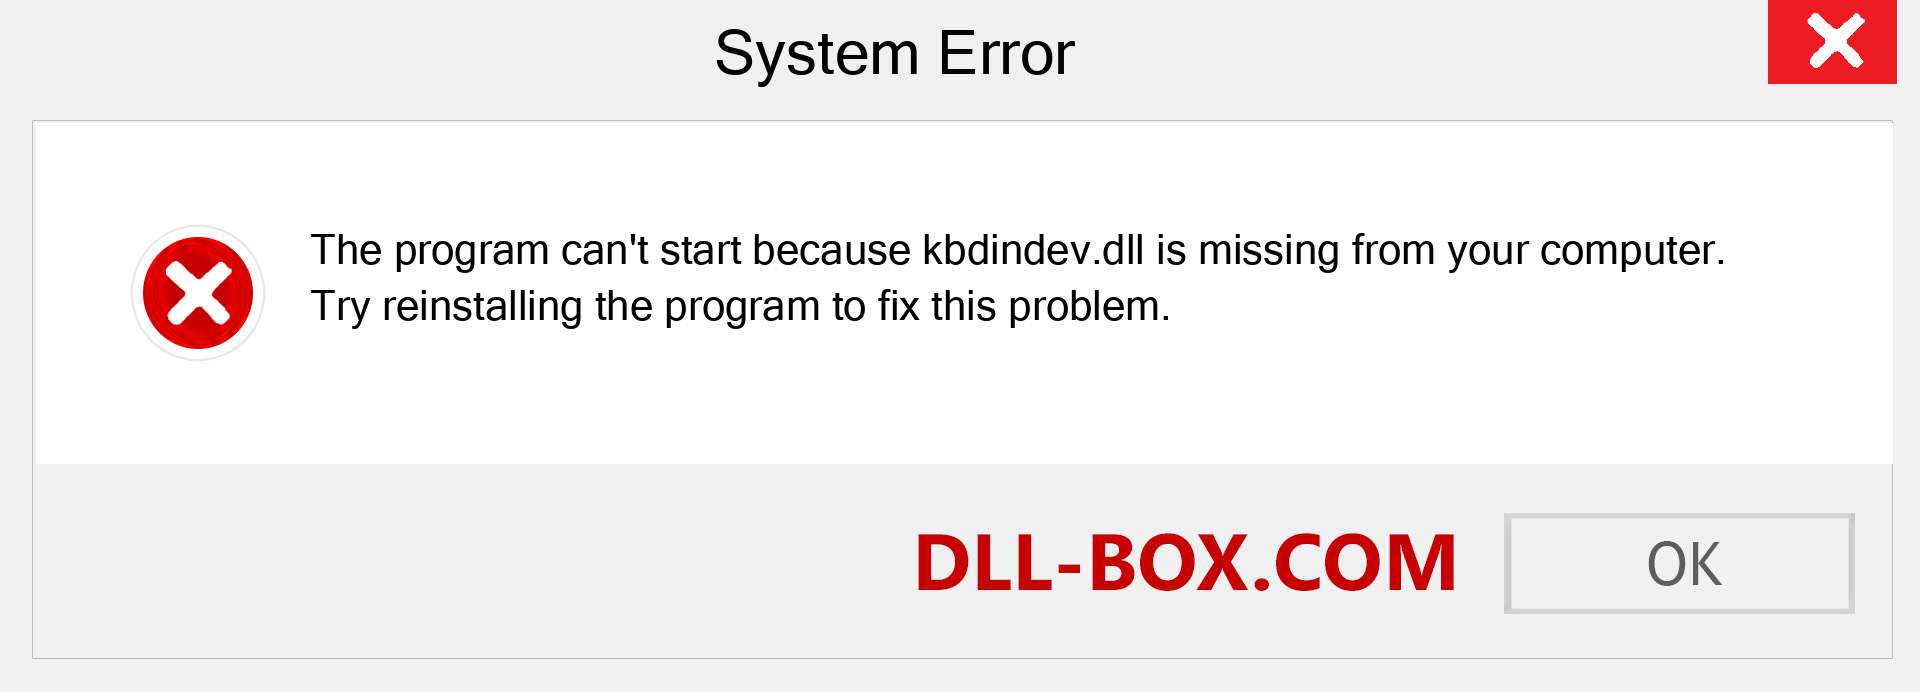  kbdindev.dll file is missing?. Download for Windows 7, 8, 10 - Fix  kbdindev dll Missing Error on Windows, photos, images